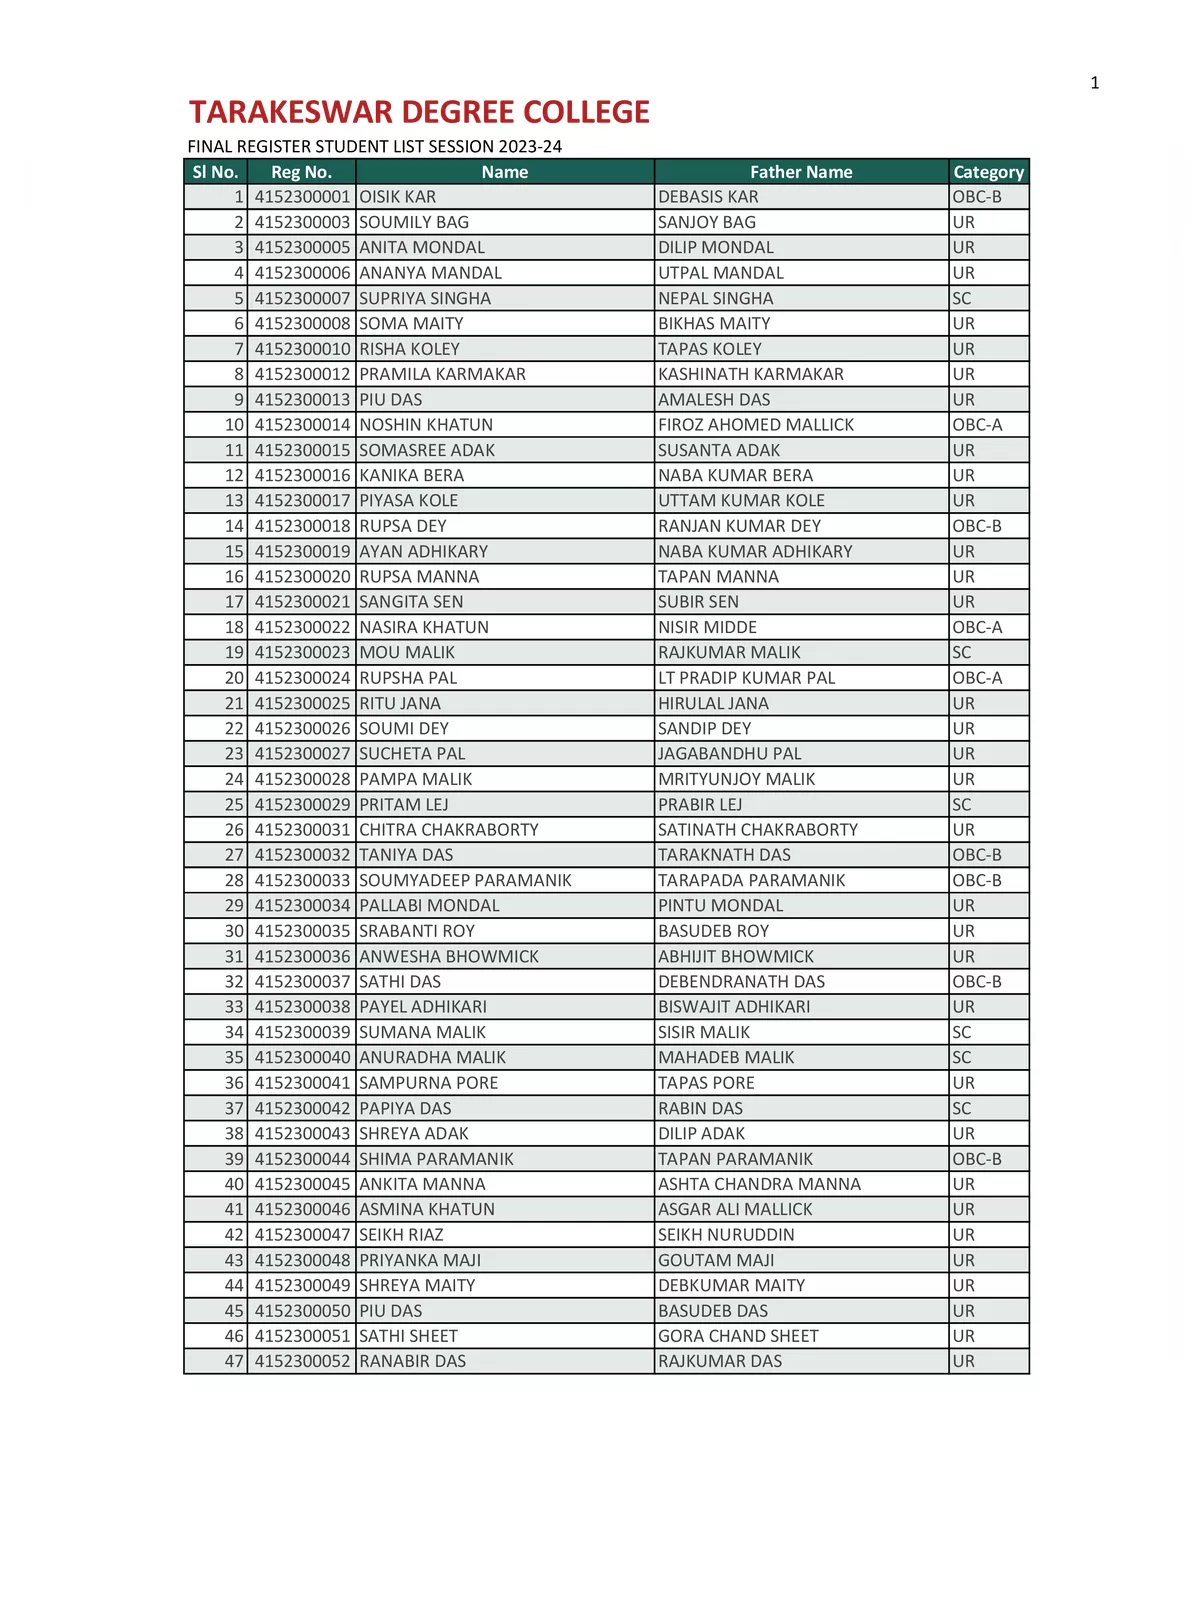 Tarakeswar Degree College Merit List 2023